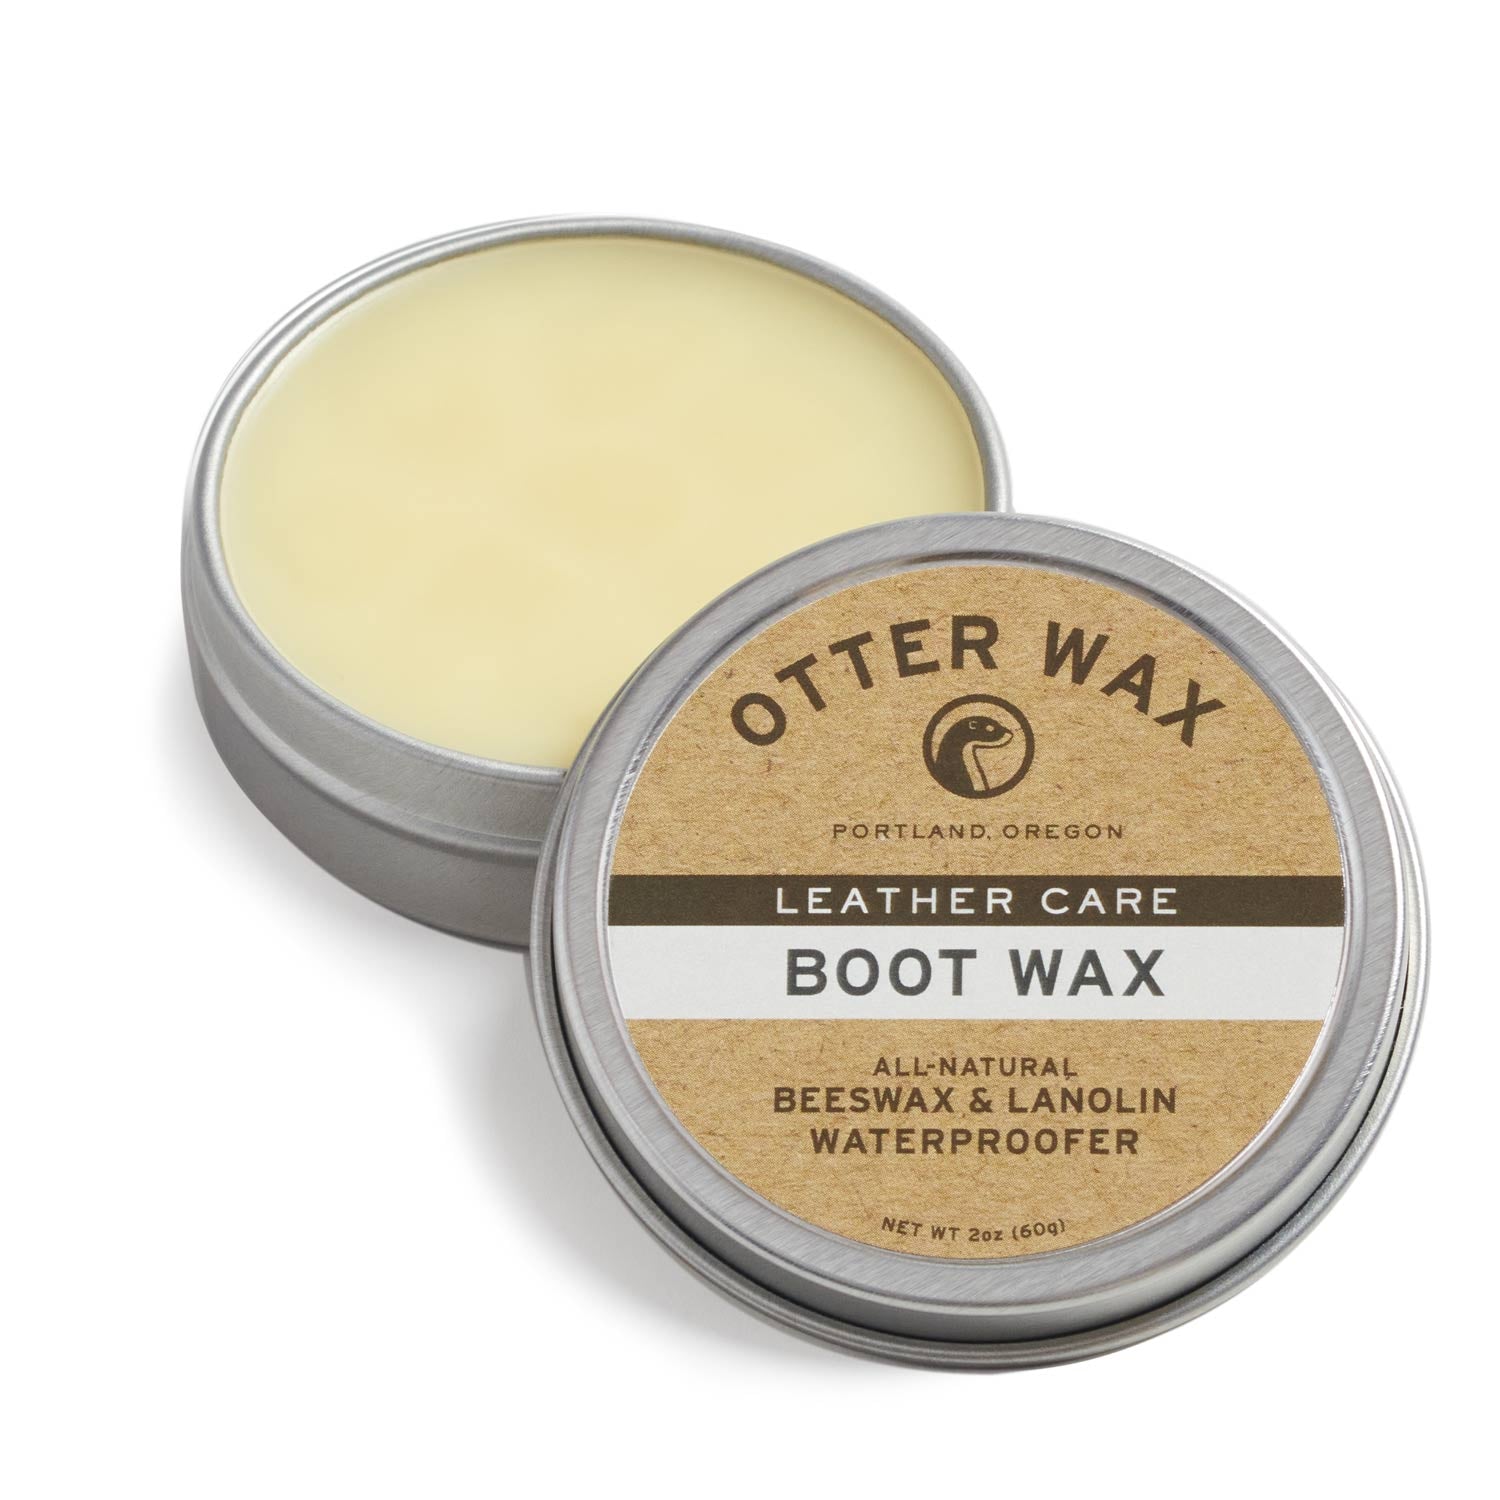 Otter Wax Boot Wax 2oz